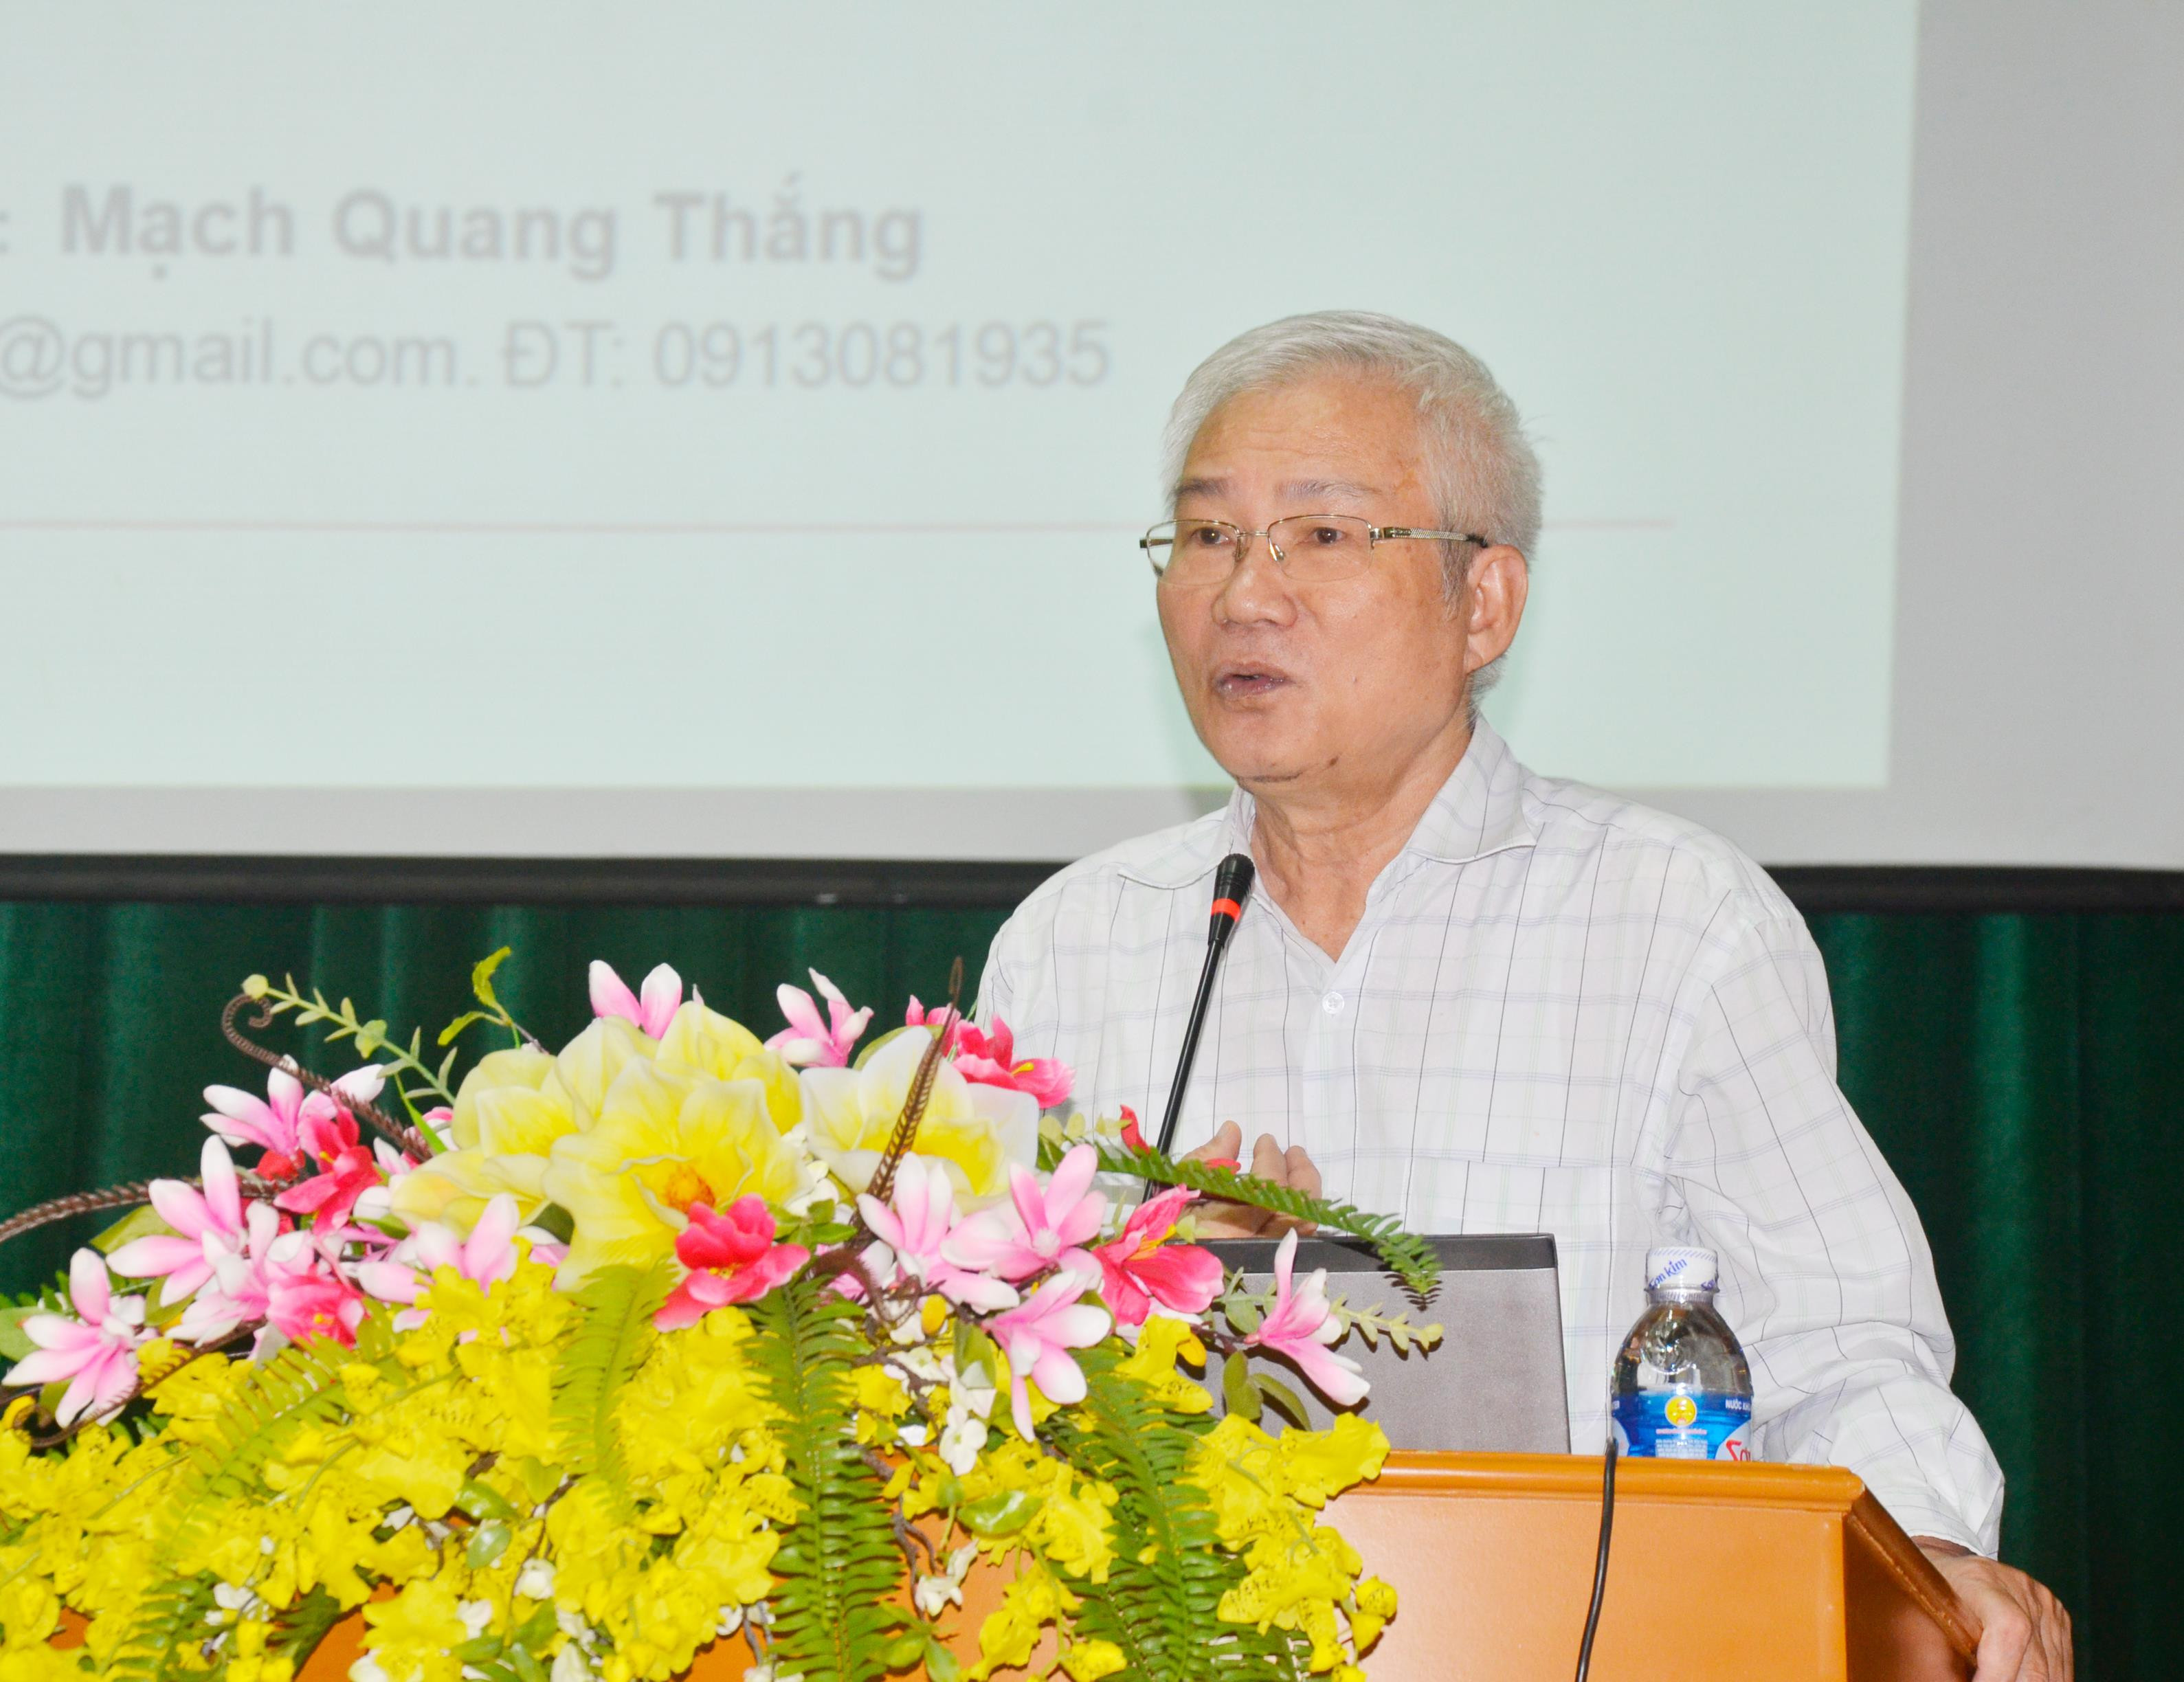 GS.TS Mạch Quang Thắng trao đổi chuyên đề